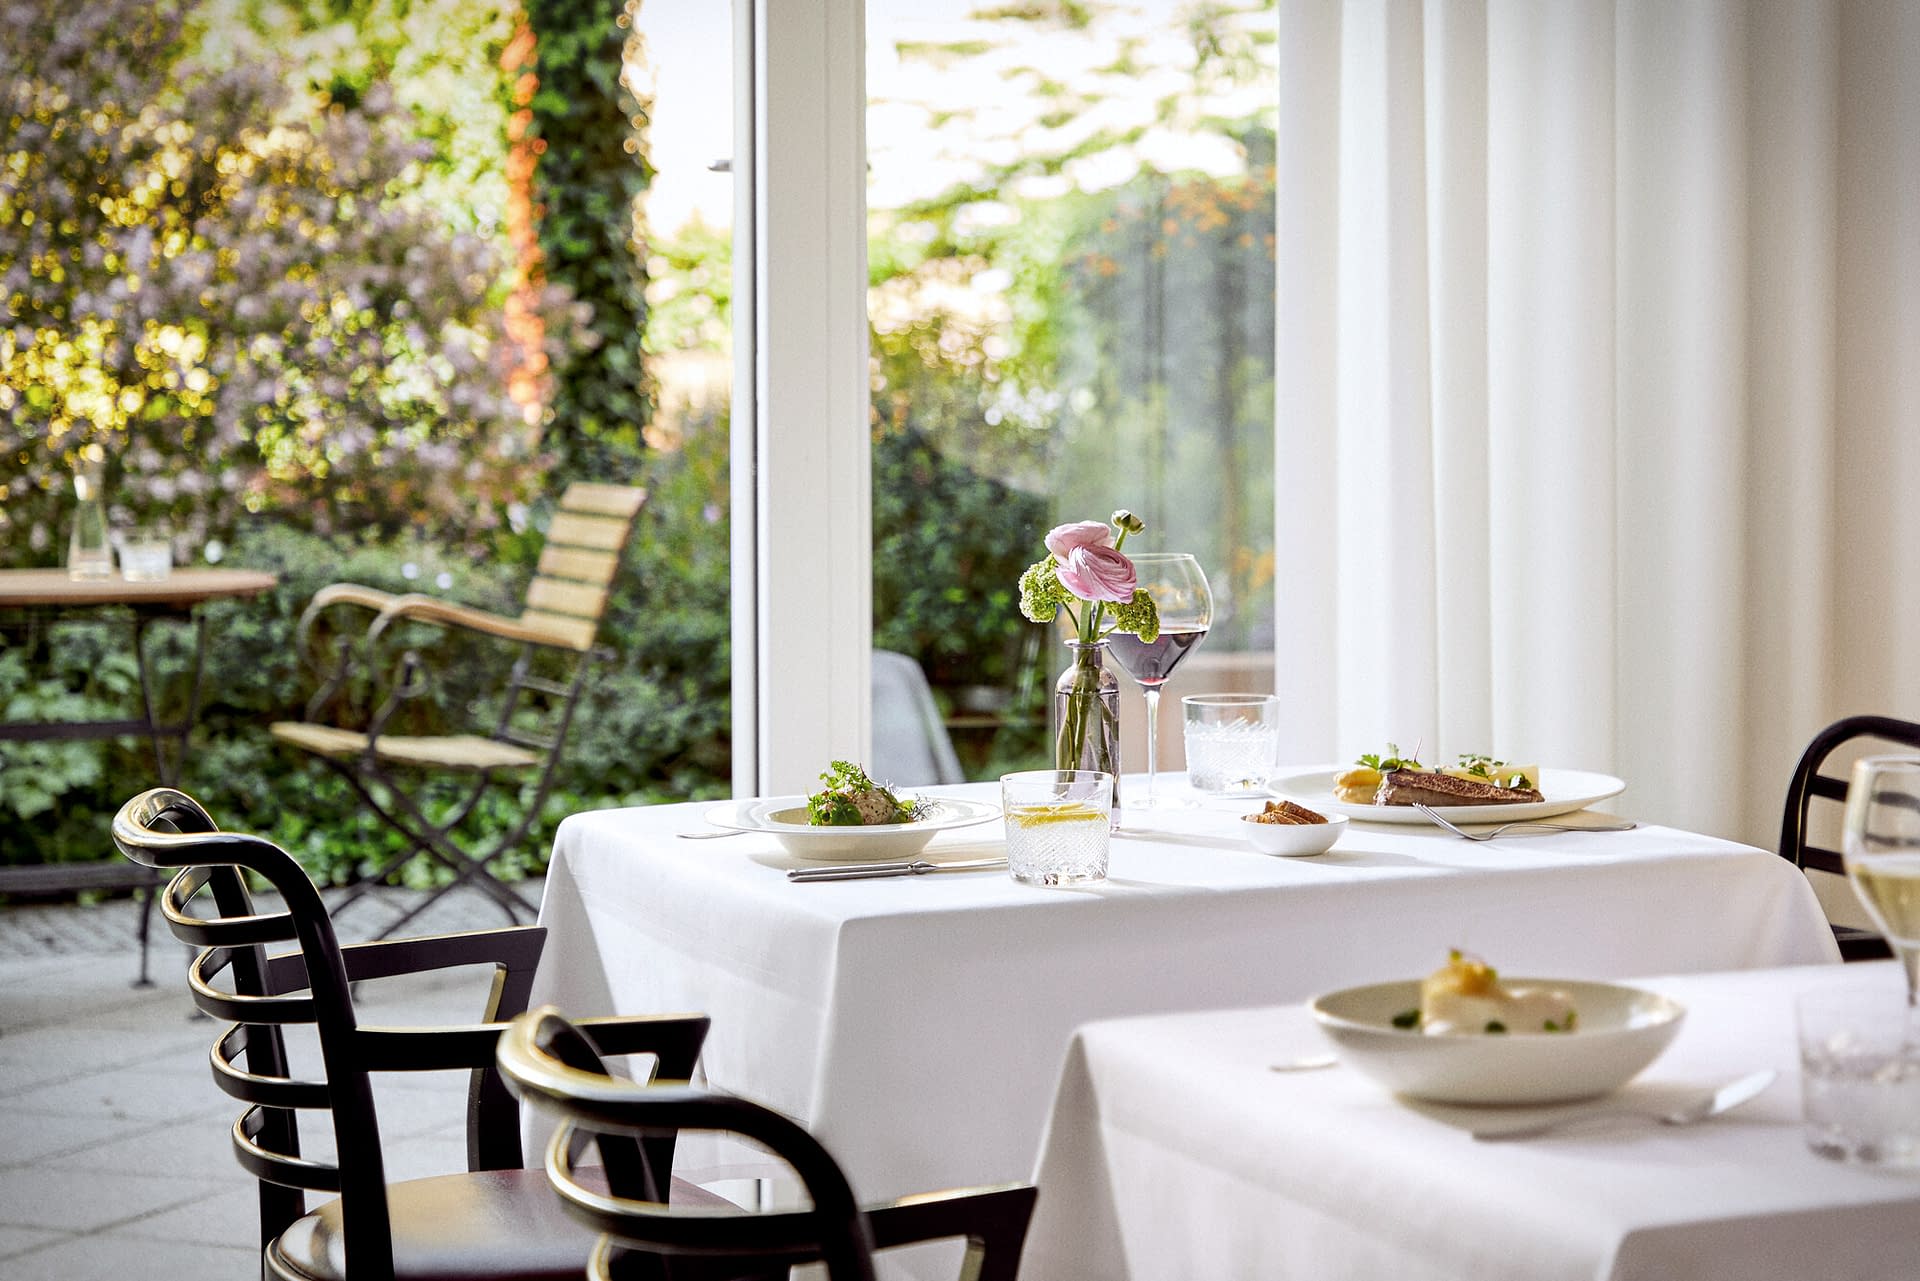 Ein weiß gedeckter Tisch mit gutem Essen und Blumen mit Blick in den grünen Garten in der Tertianum Senioreneinrichtung.